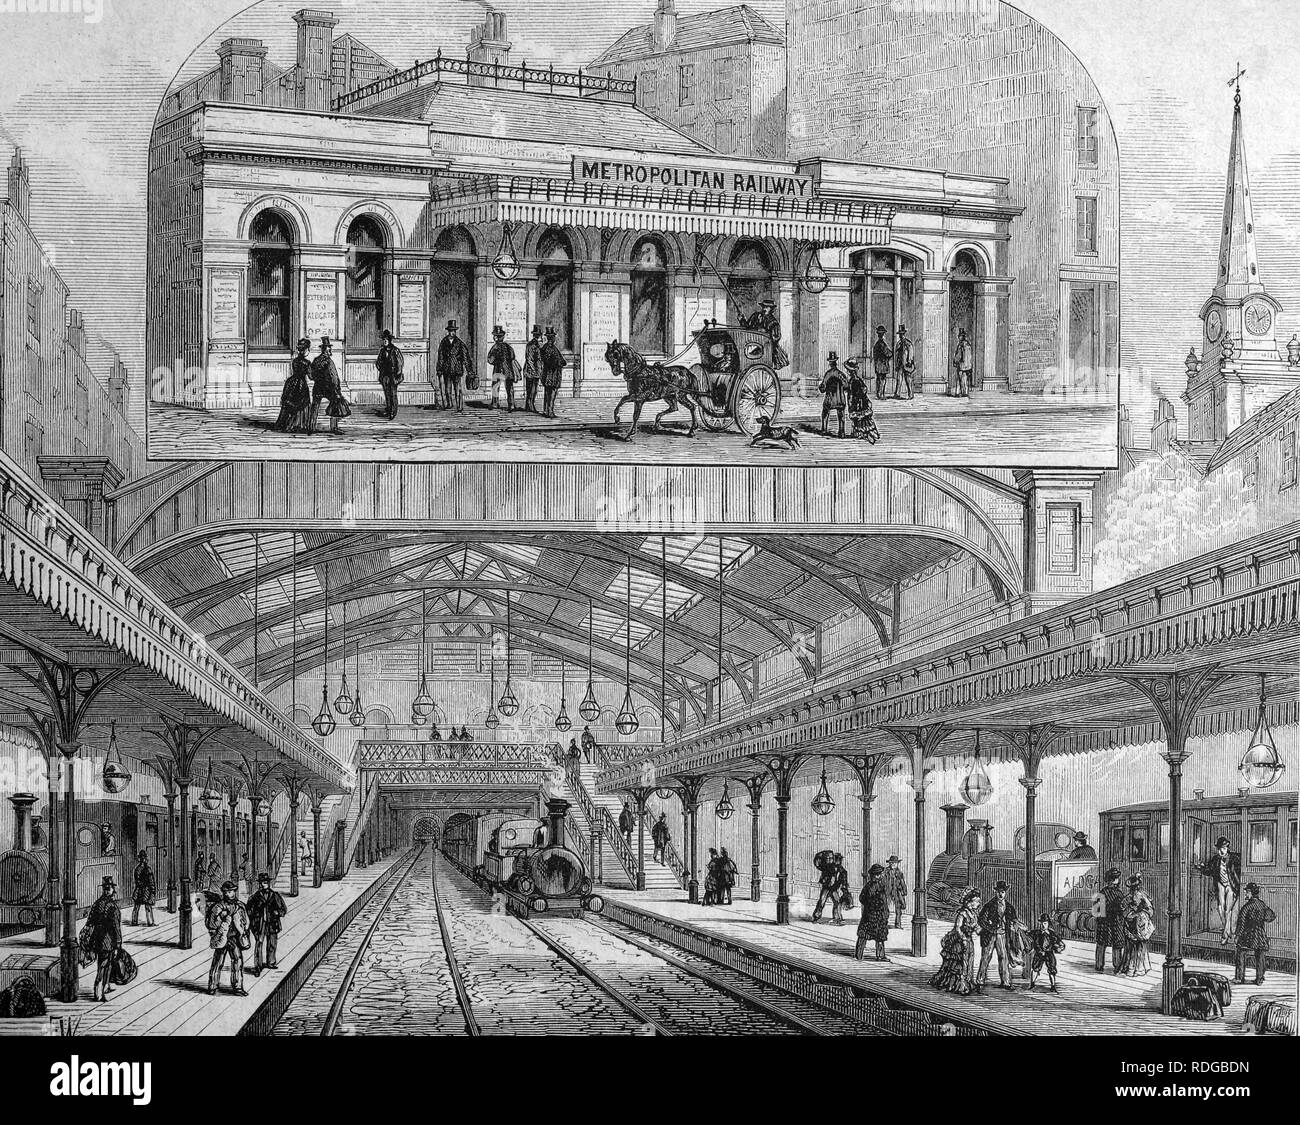 La station de métro Aldgate à Londres, Angleterre, illustration historique, 1877 Banque D'Images